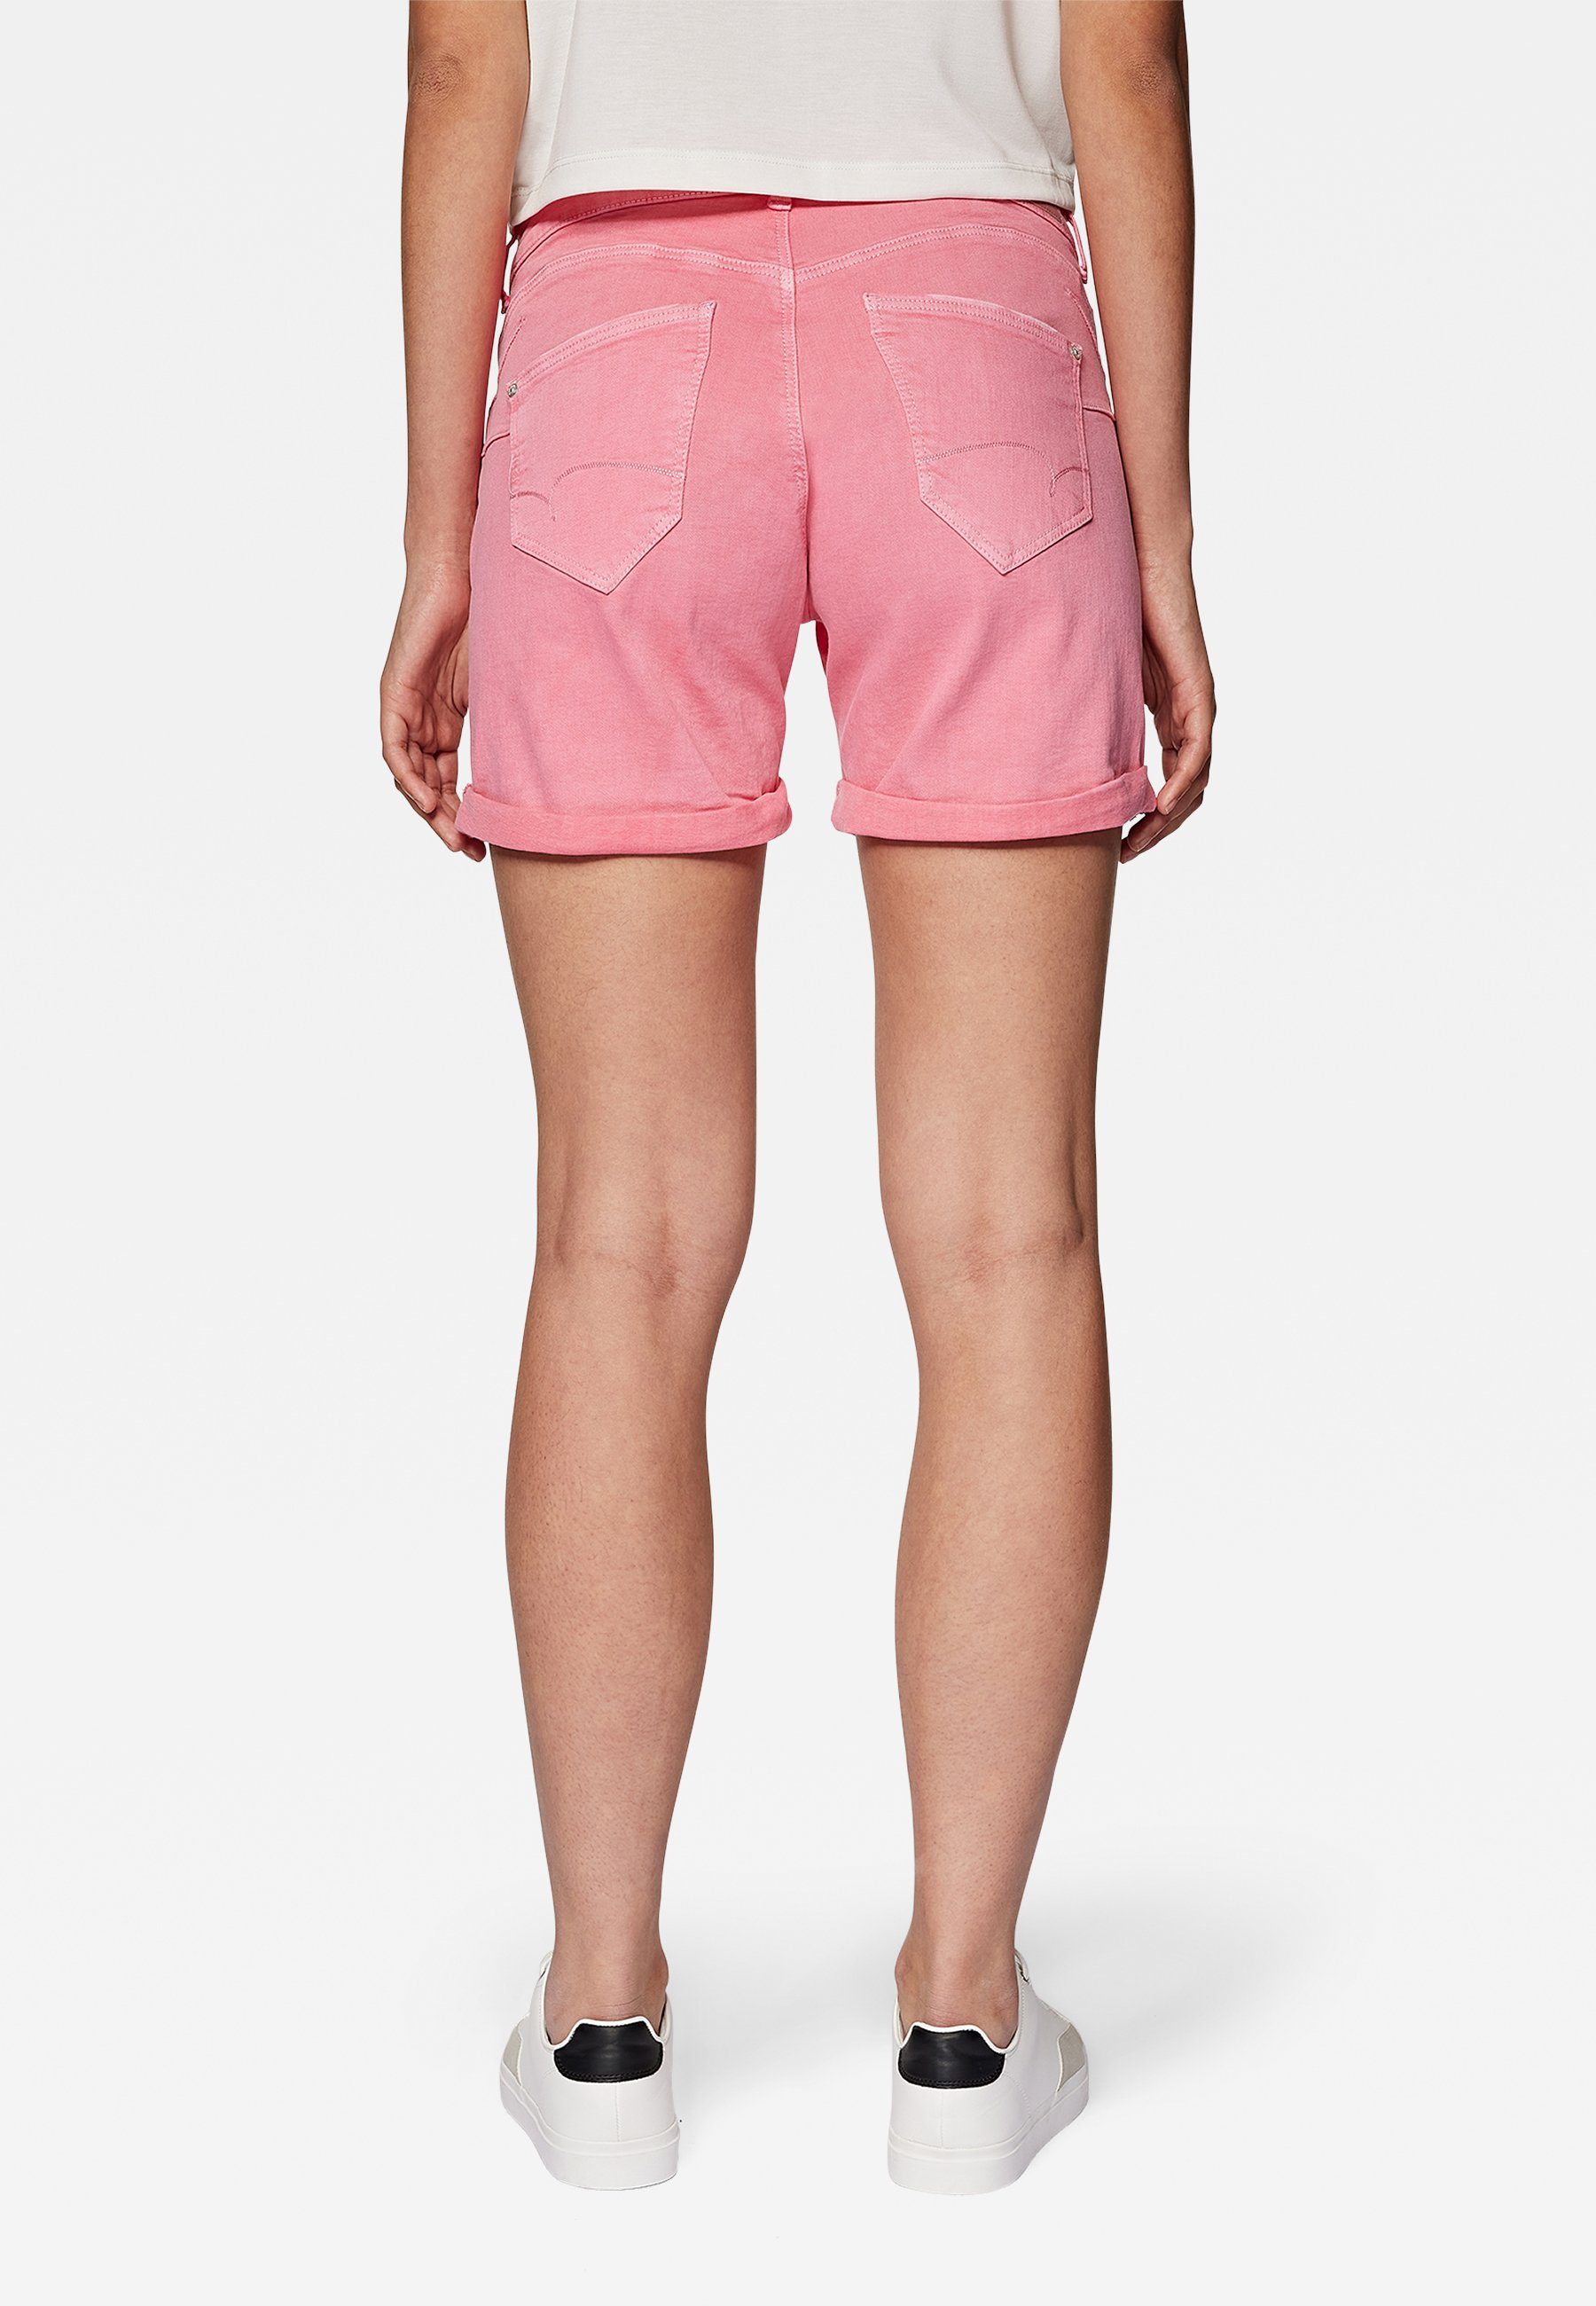 PIXIE str lemonade Mavi Shorts Denim pink Shorts